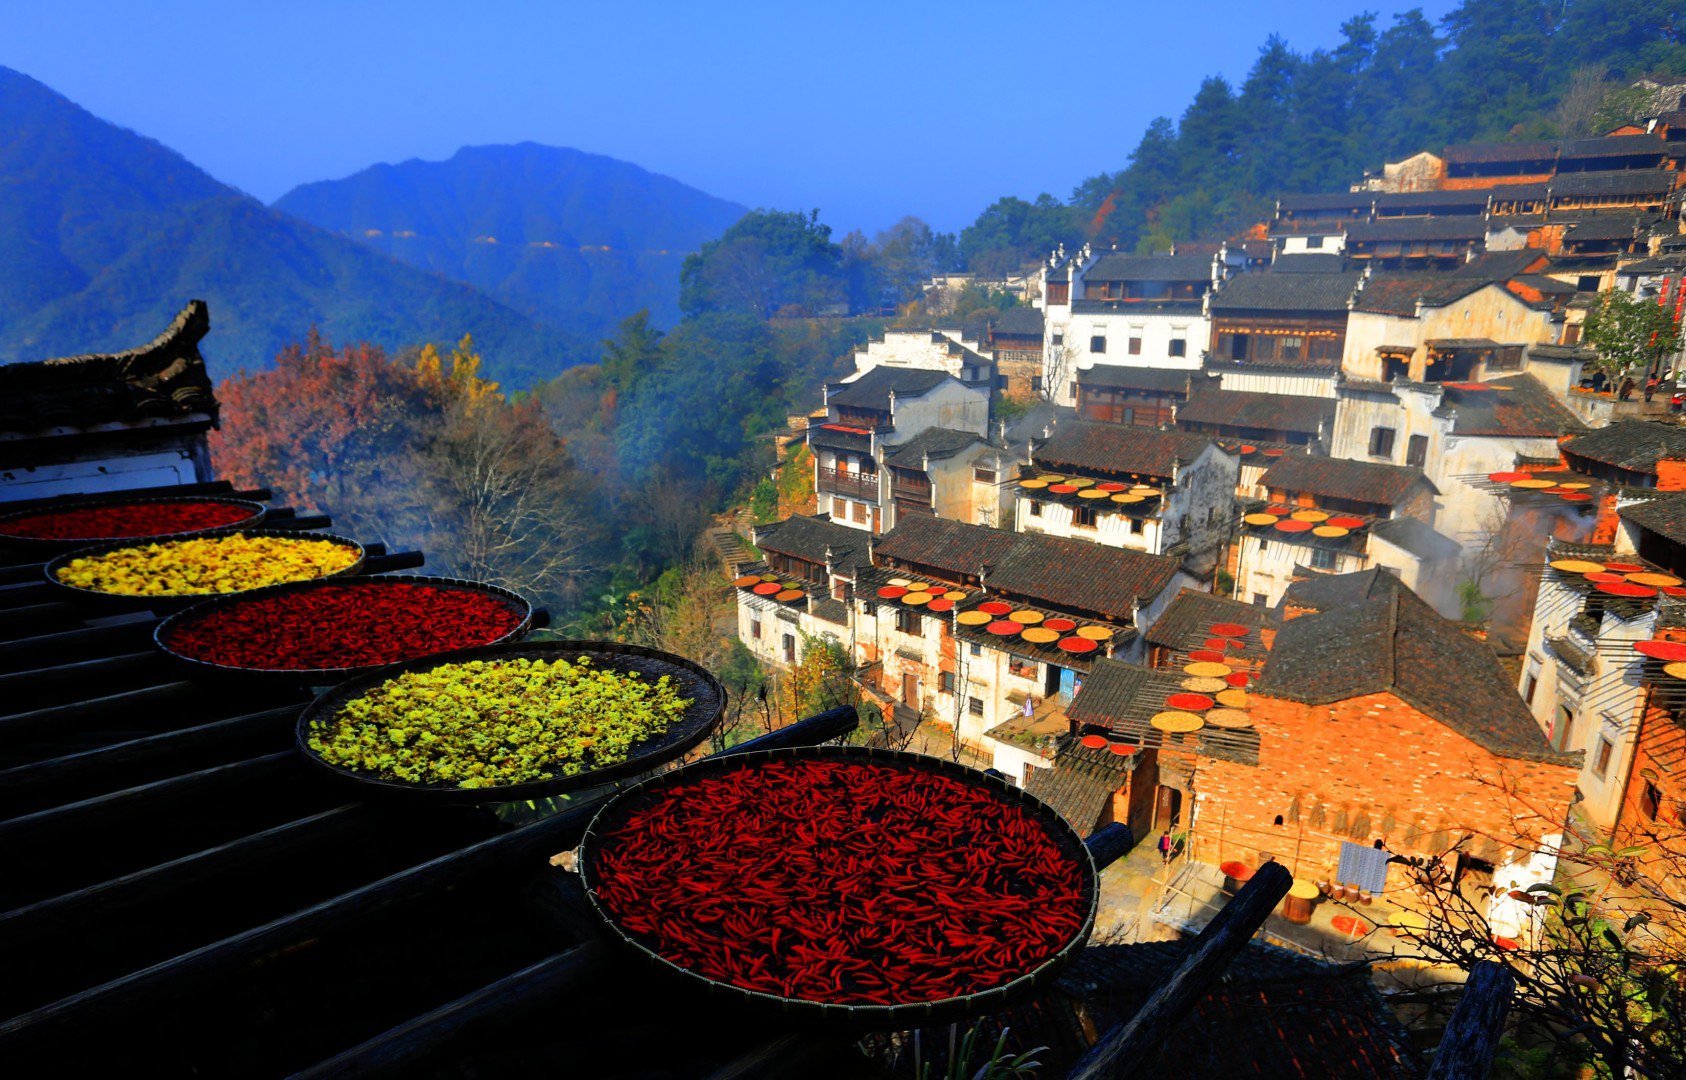 Vẻ đẹp đầy sắc màu của ngôi làng cổ Huangling ở huyện Vụ Nguyên (tỉnh Giang Tây) khi người dân phơi khô một số sản phẩm mùa màng như ớt, ngũ cốc... trên mái nhà. Ảnh: Xinhua